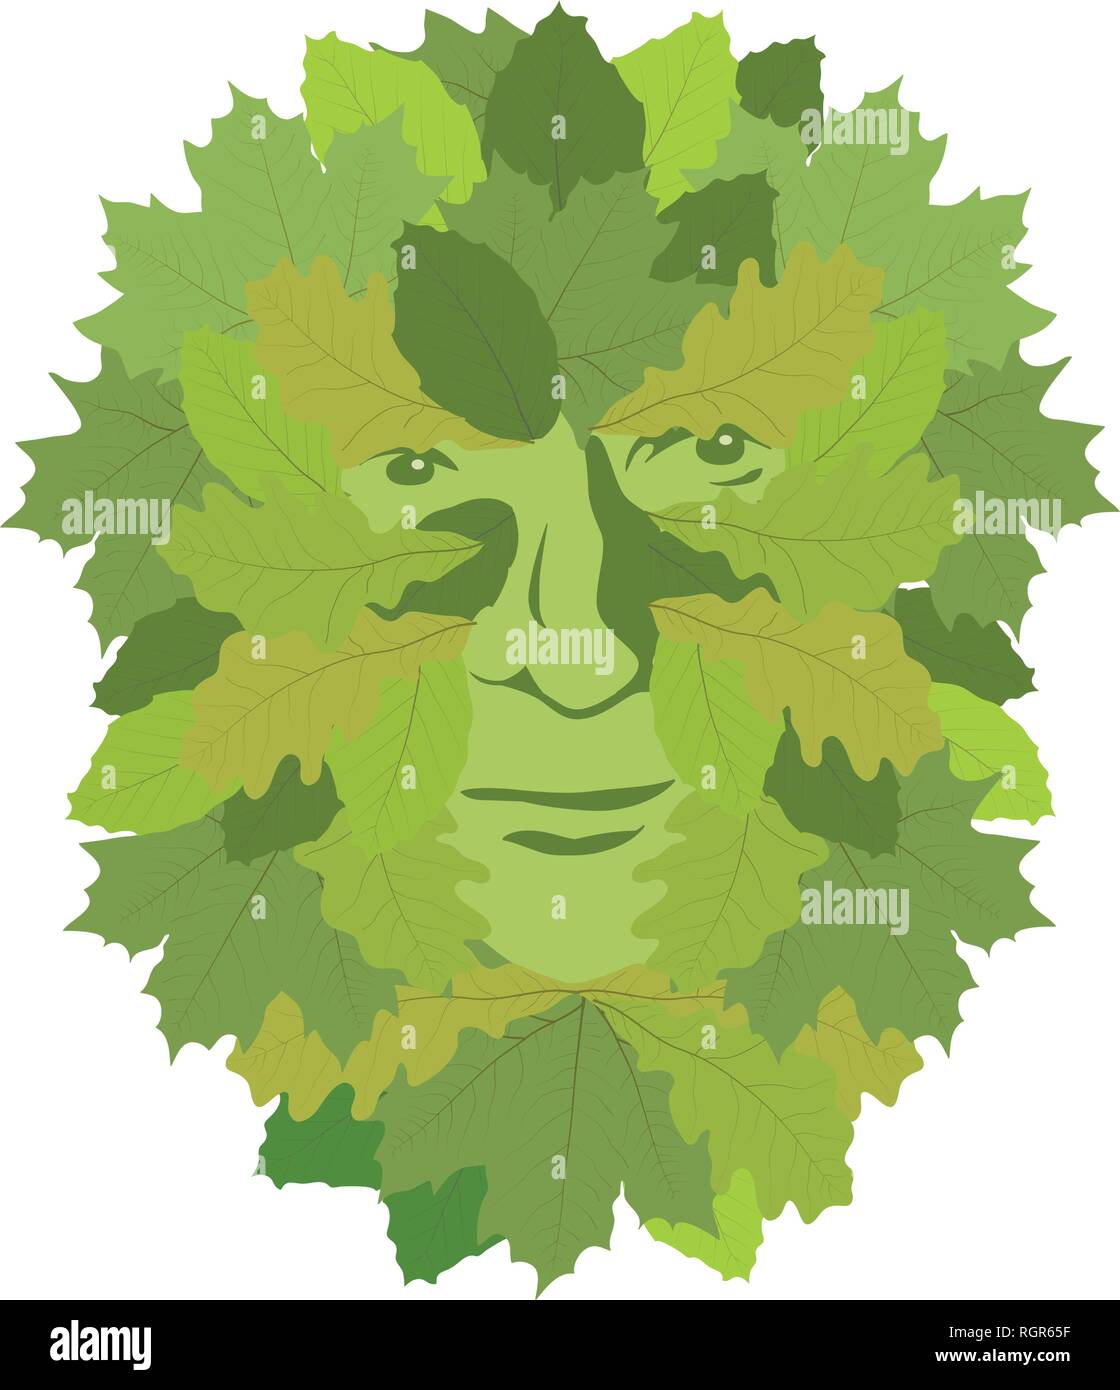 Celtic symbol, green man, vector illustration Stock Vector